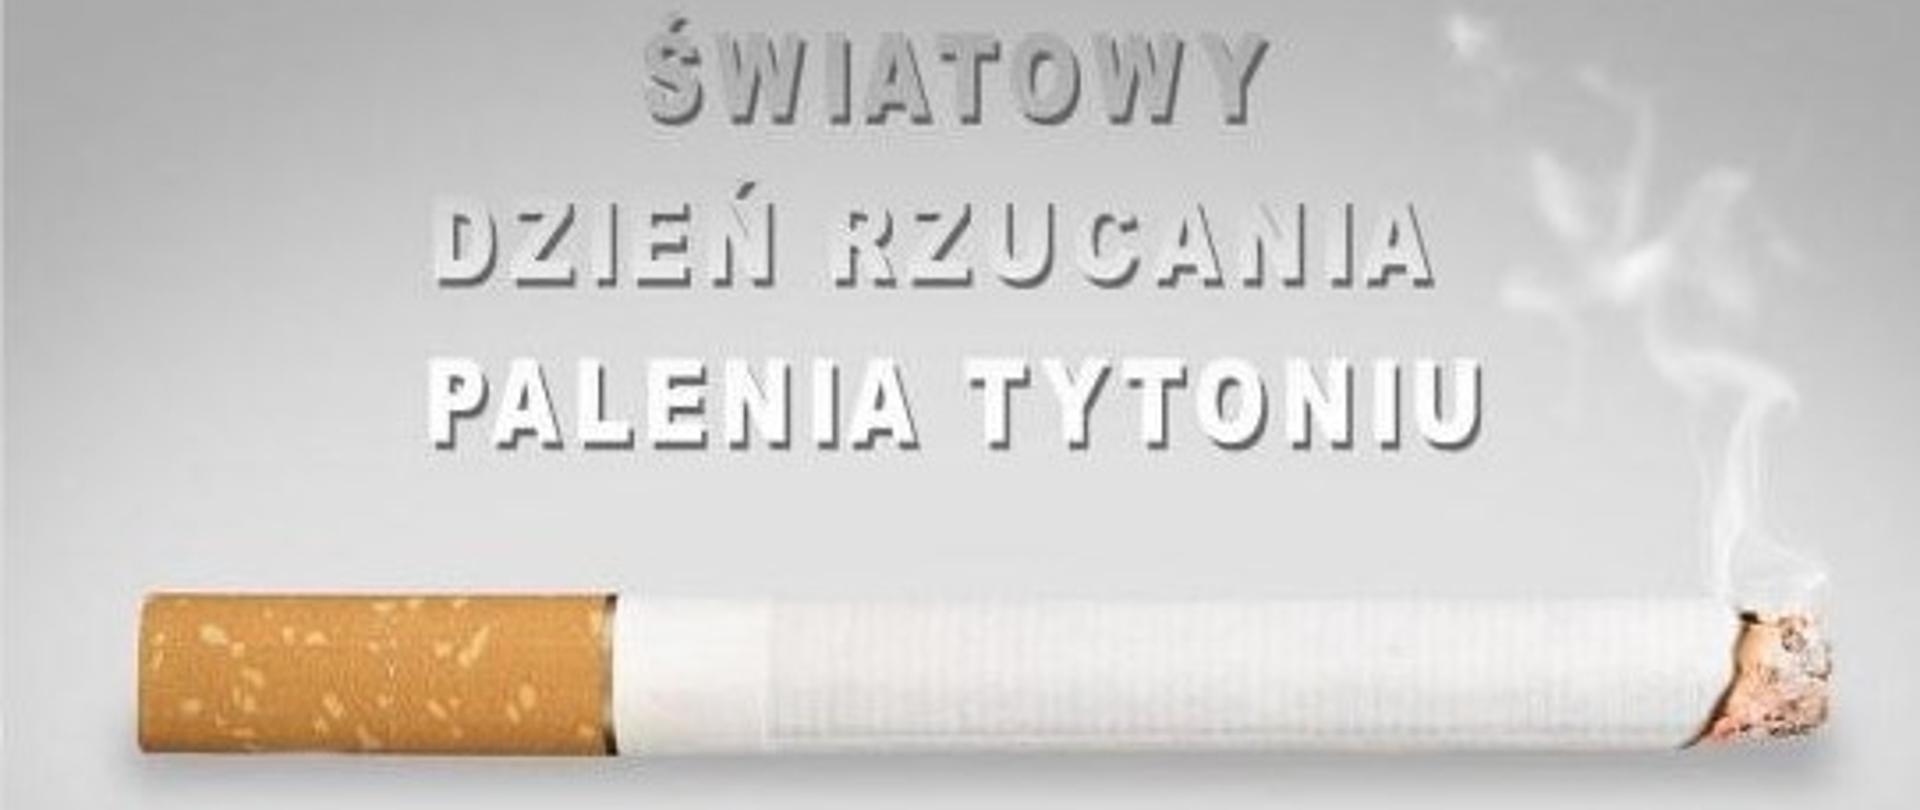 Na szarym zdjęciu napis: ŚWIATOWY DZIEŃ RZUCANIA PALENIA TYTONIU, pod napisem zdjęcie tlącego się papierosa